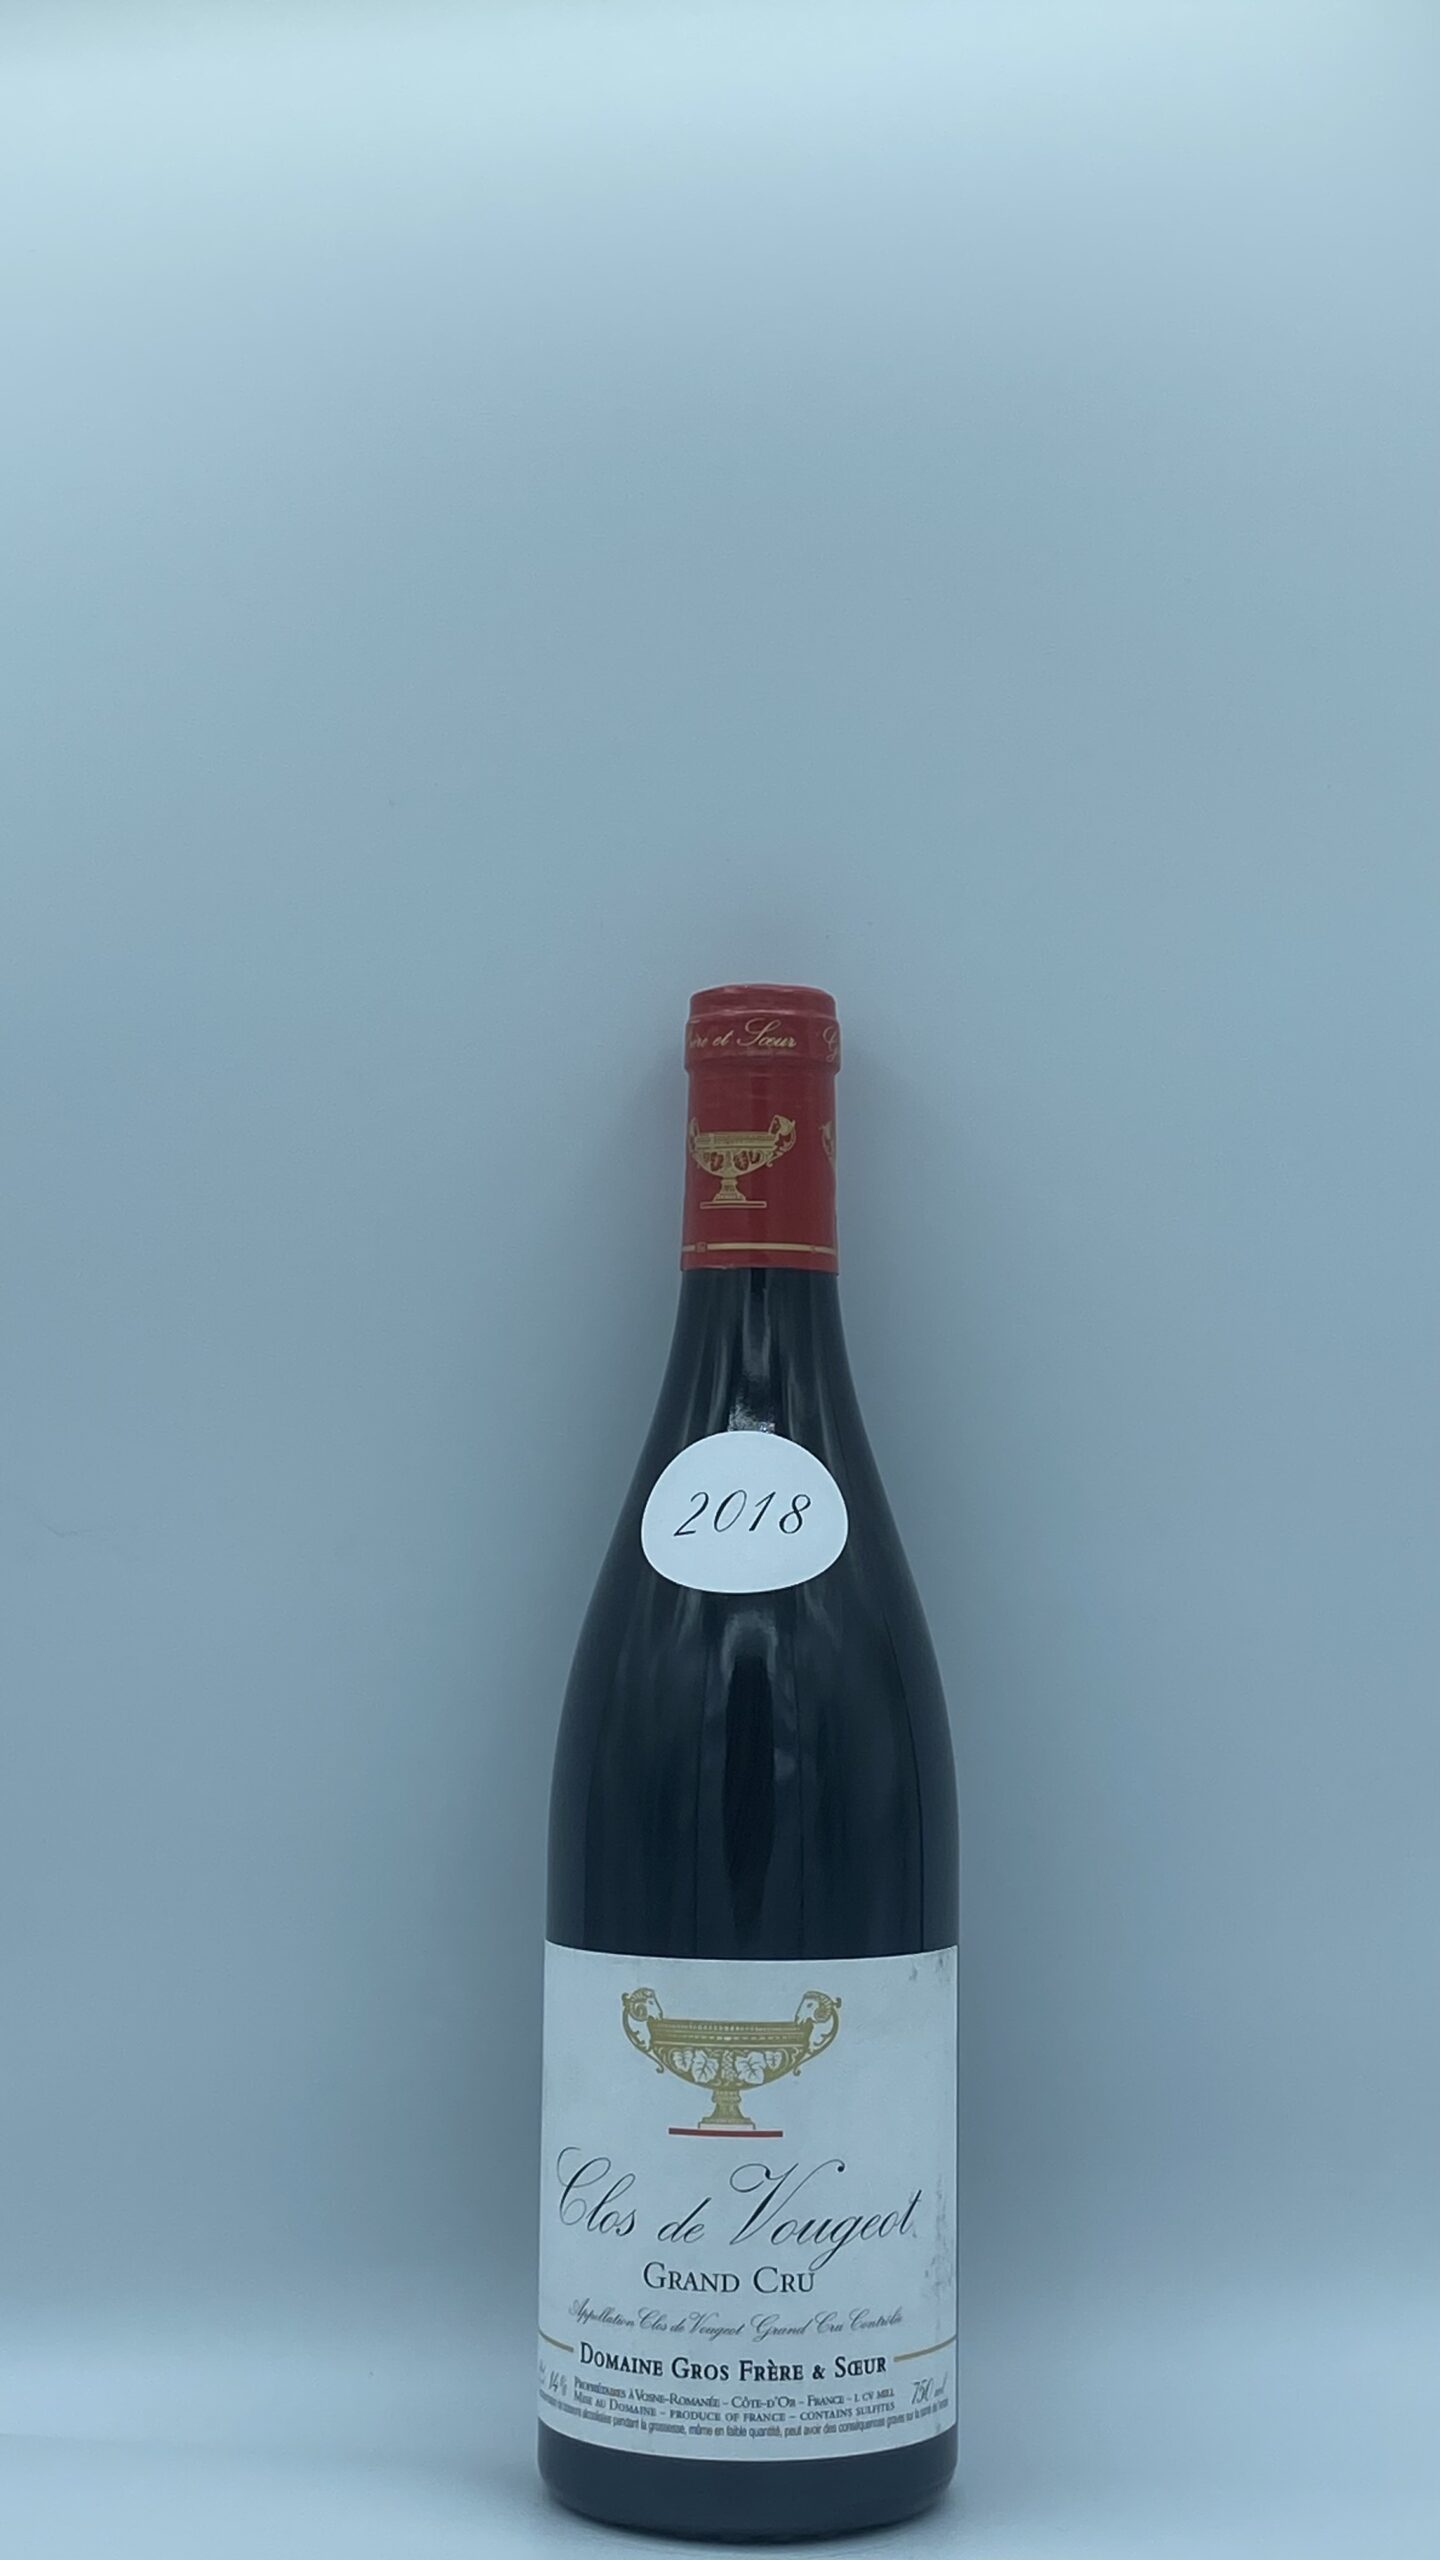 Bourgogne Clos Vougeot 2018 Domaine Gros Frère & Soeur